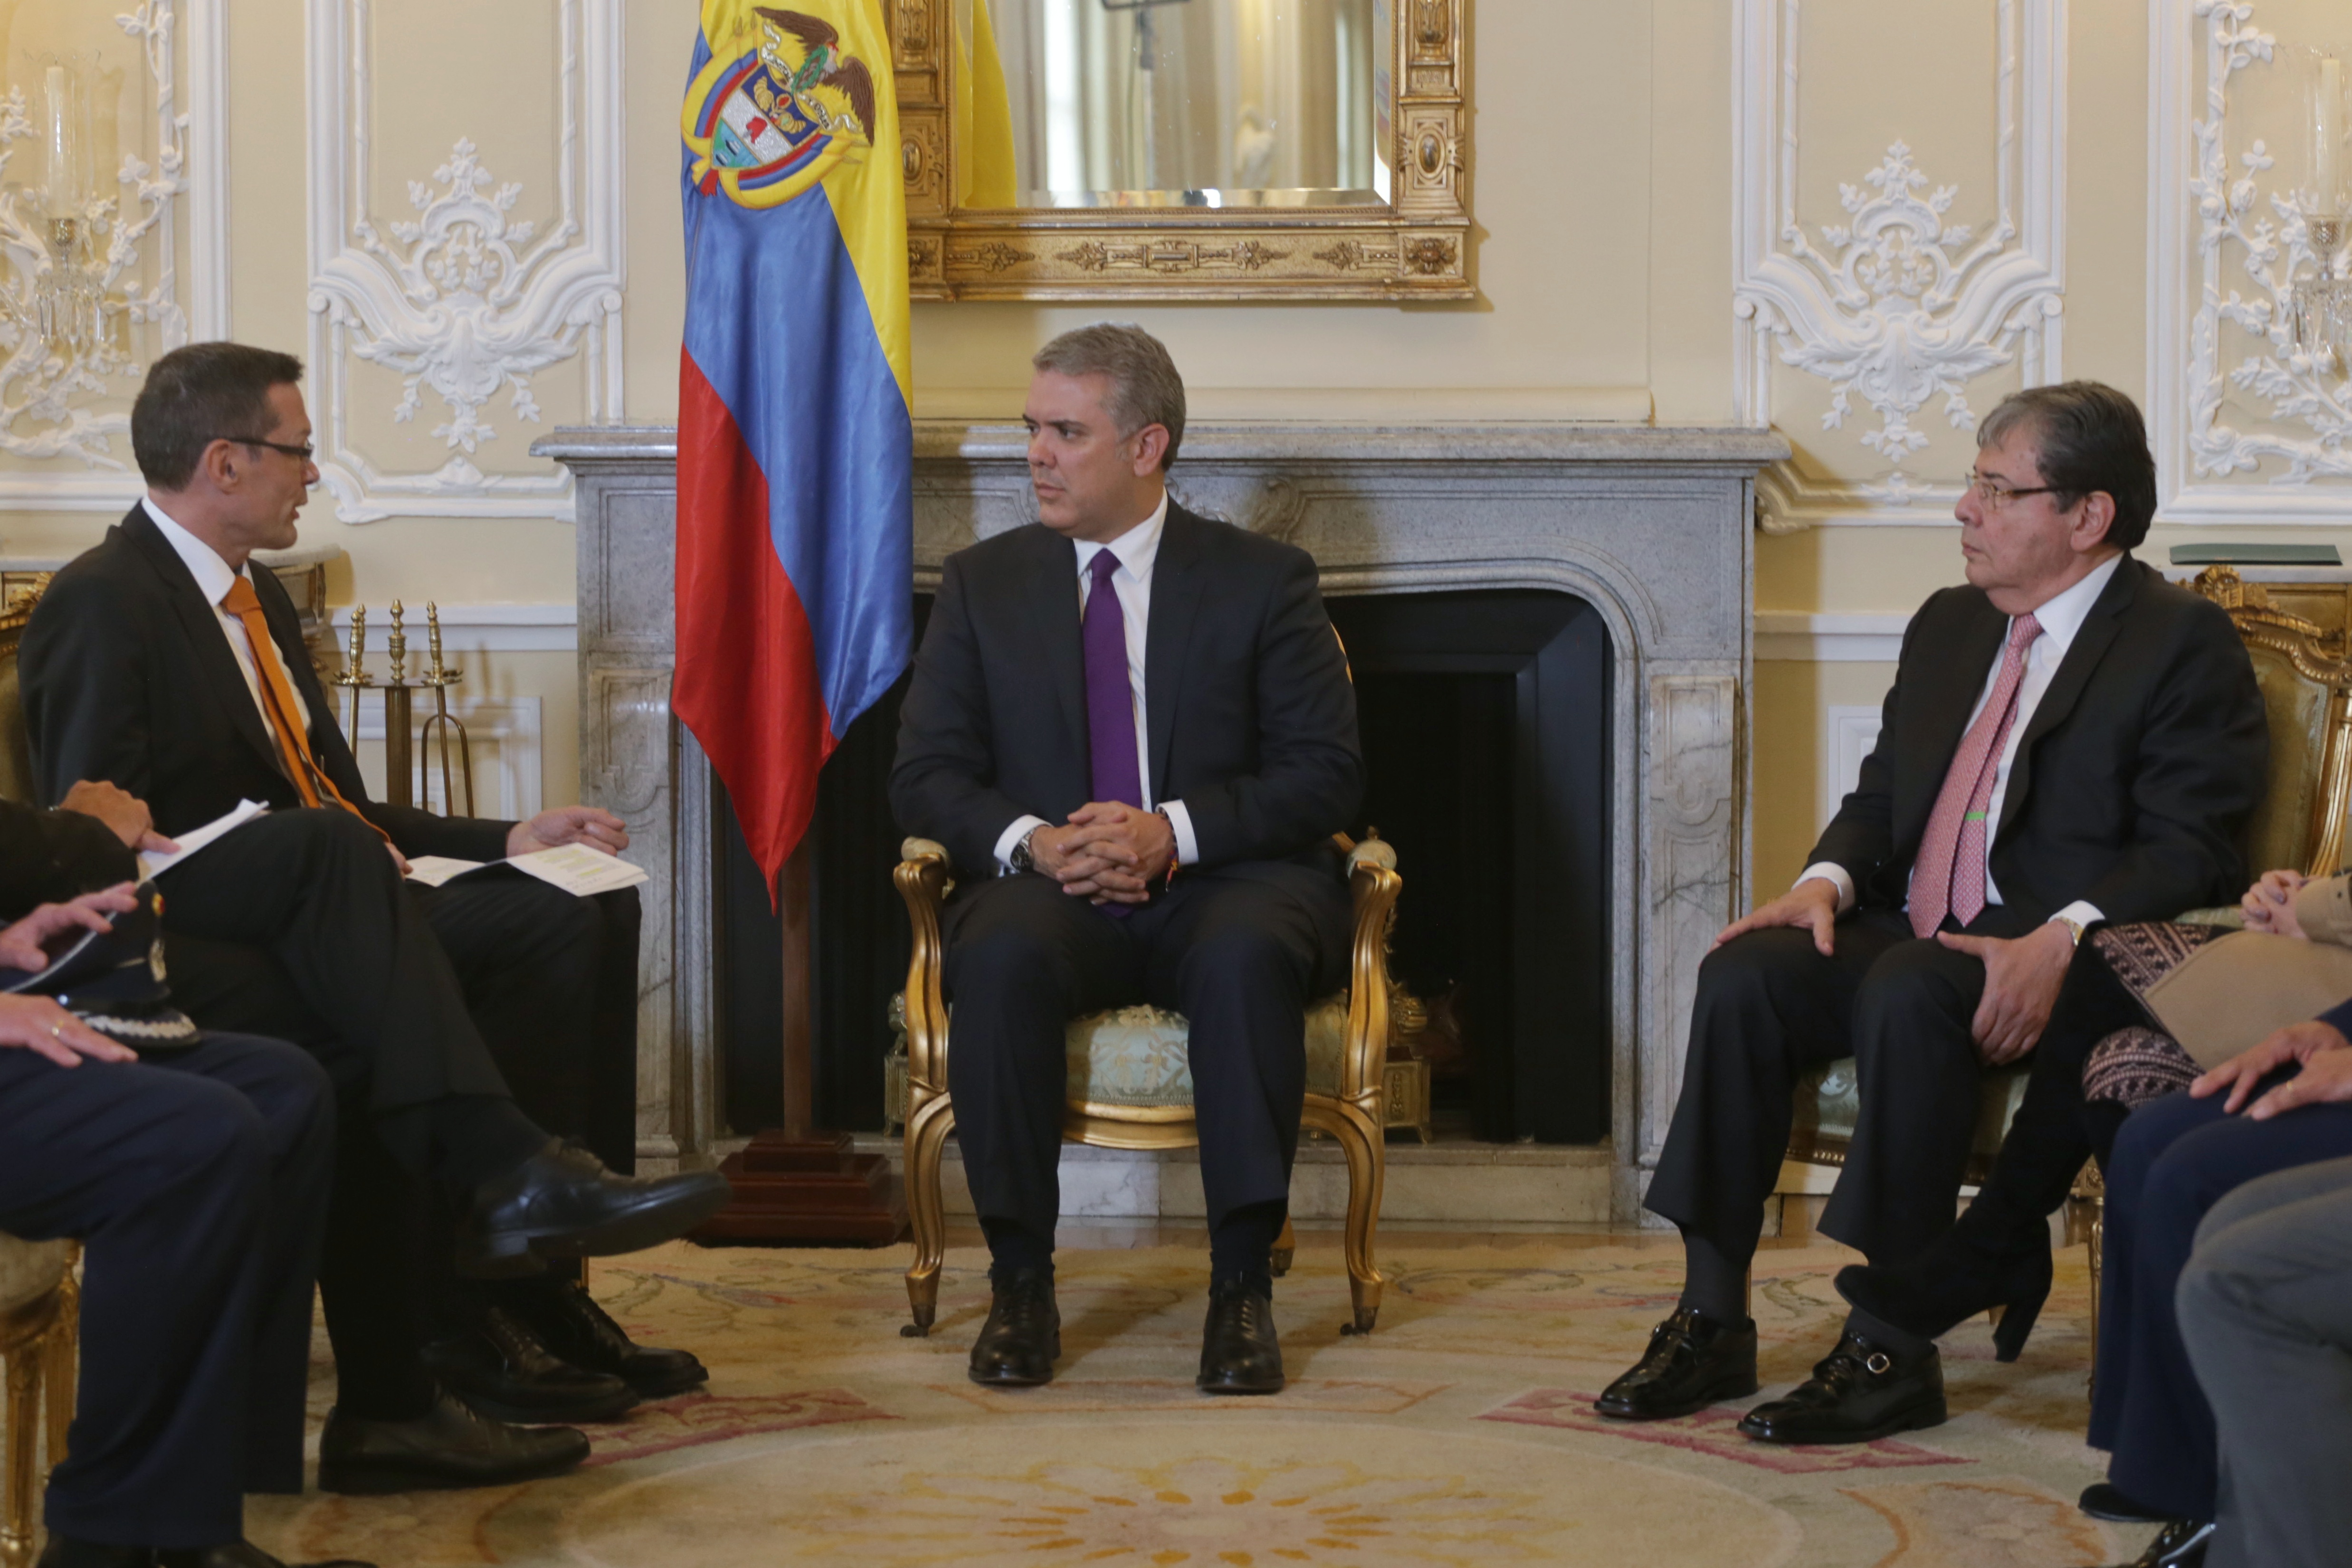 Embajador de Alemania en Colombia, Peter Ptassek, presentó cartas credenciales ante el Presidente Iván Duque